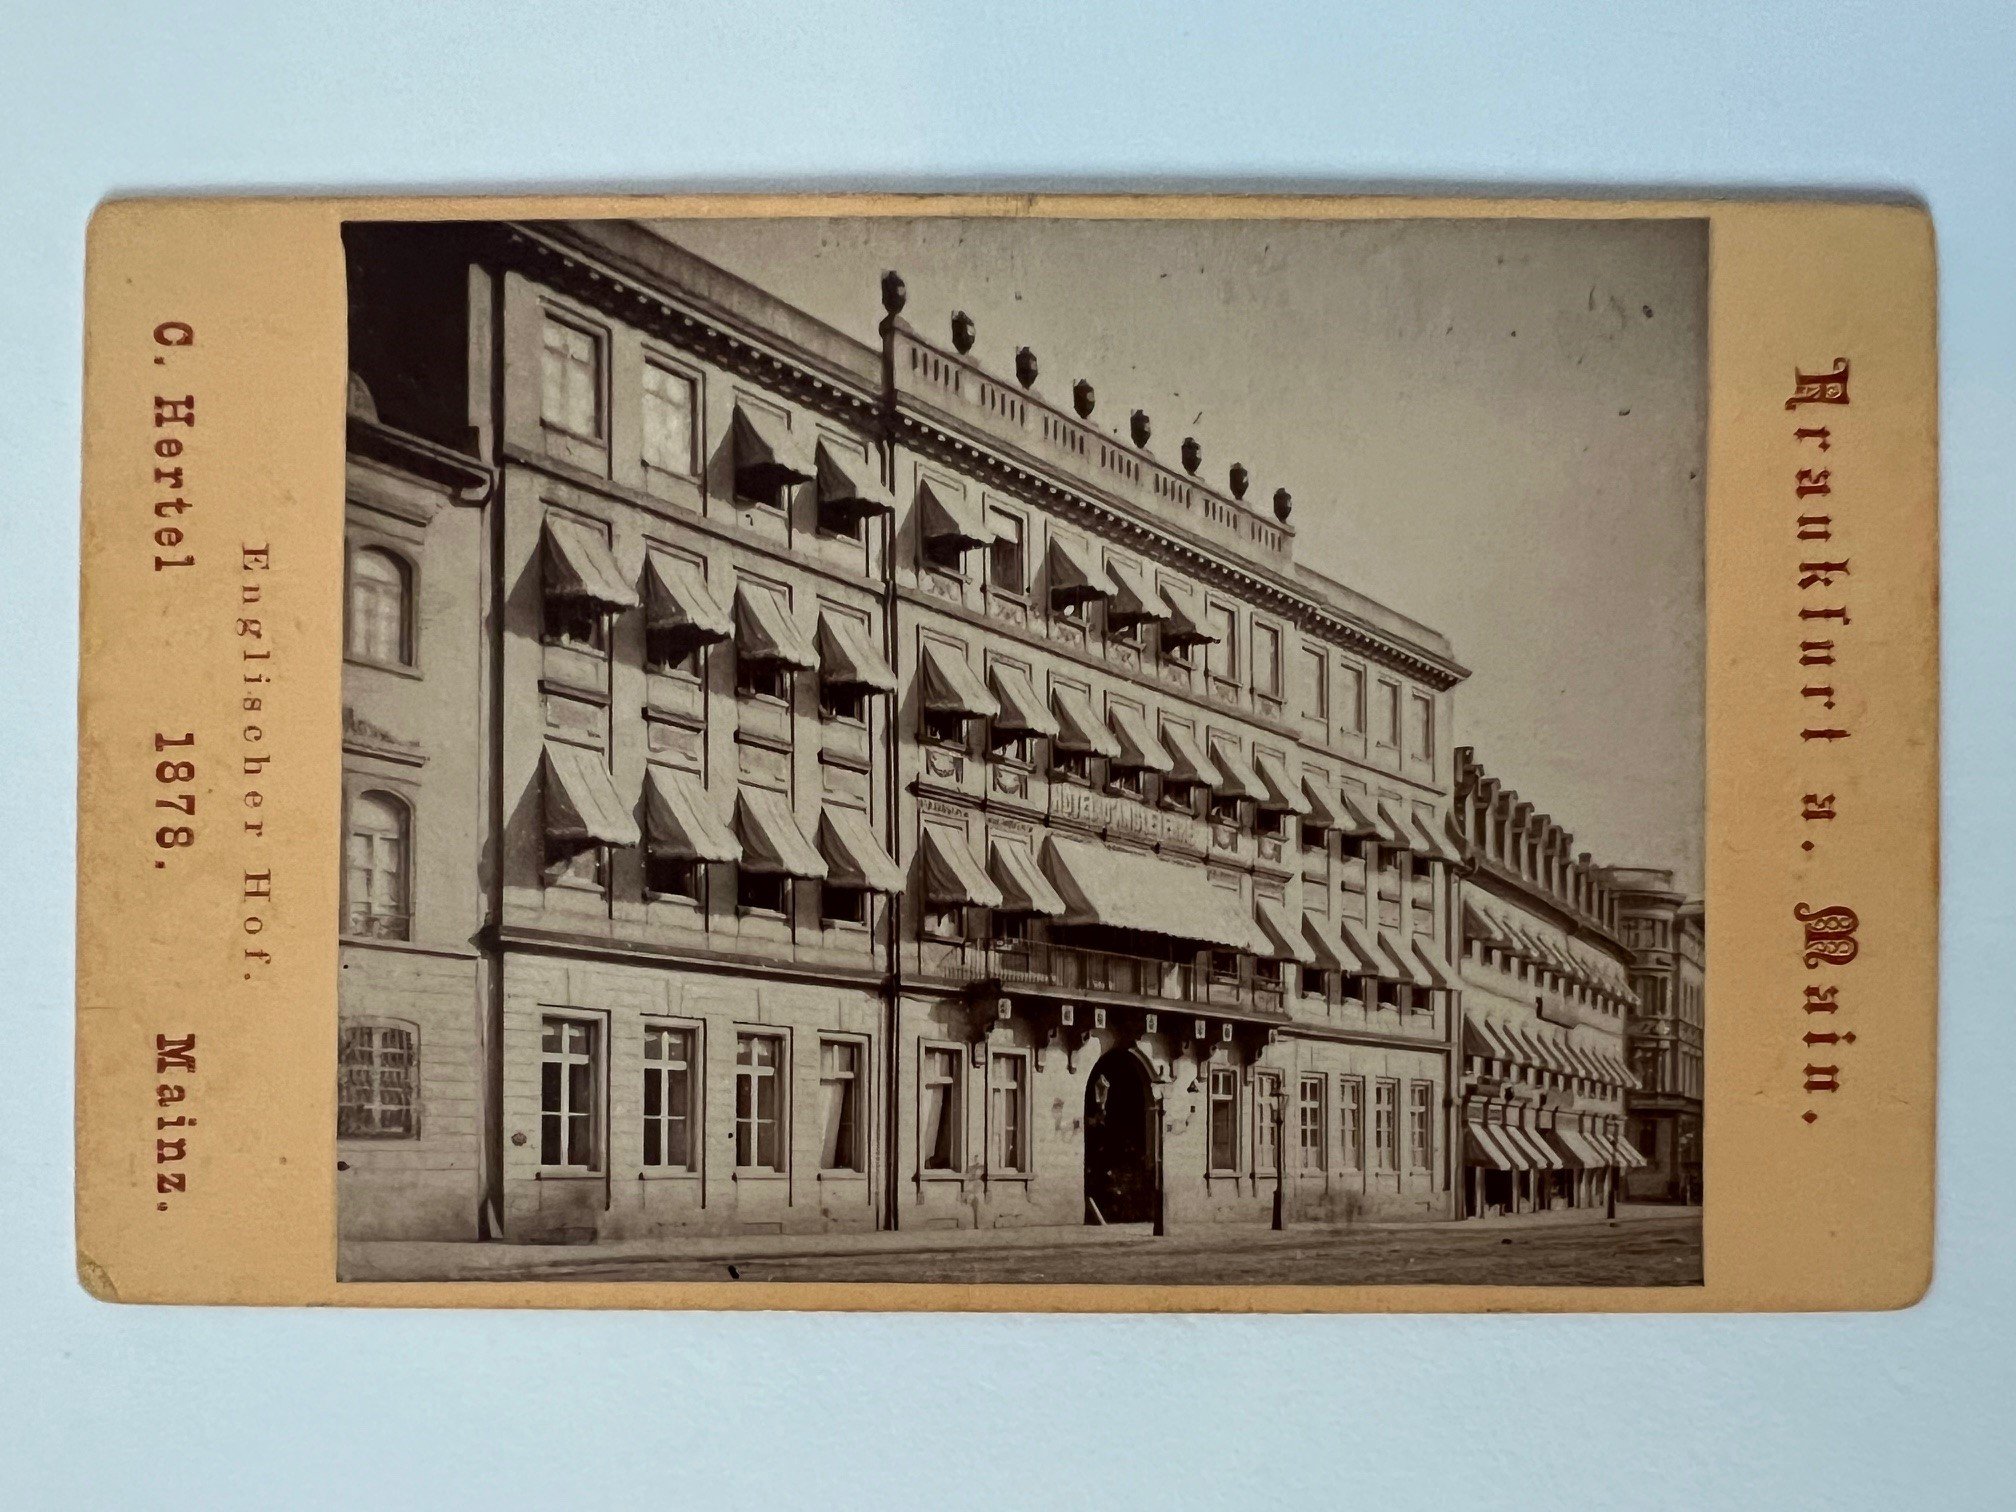 CdV, Carl Hertel, Frankfurt, Englischer Hof, 1878. (Taunus-Rhein-Main - Regionalgeschichtliche Sammlung Dr. Stefan Naas CC BY-NC-SA)